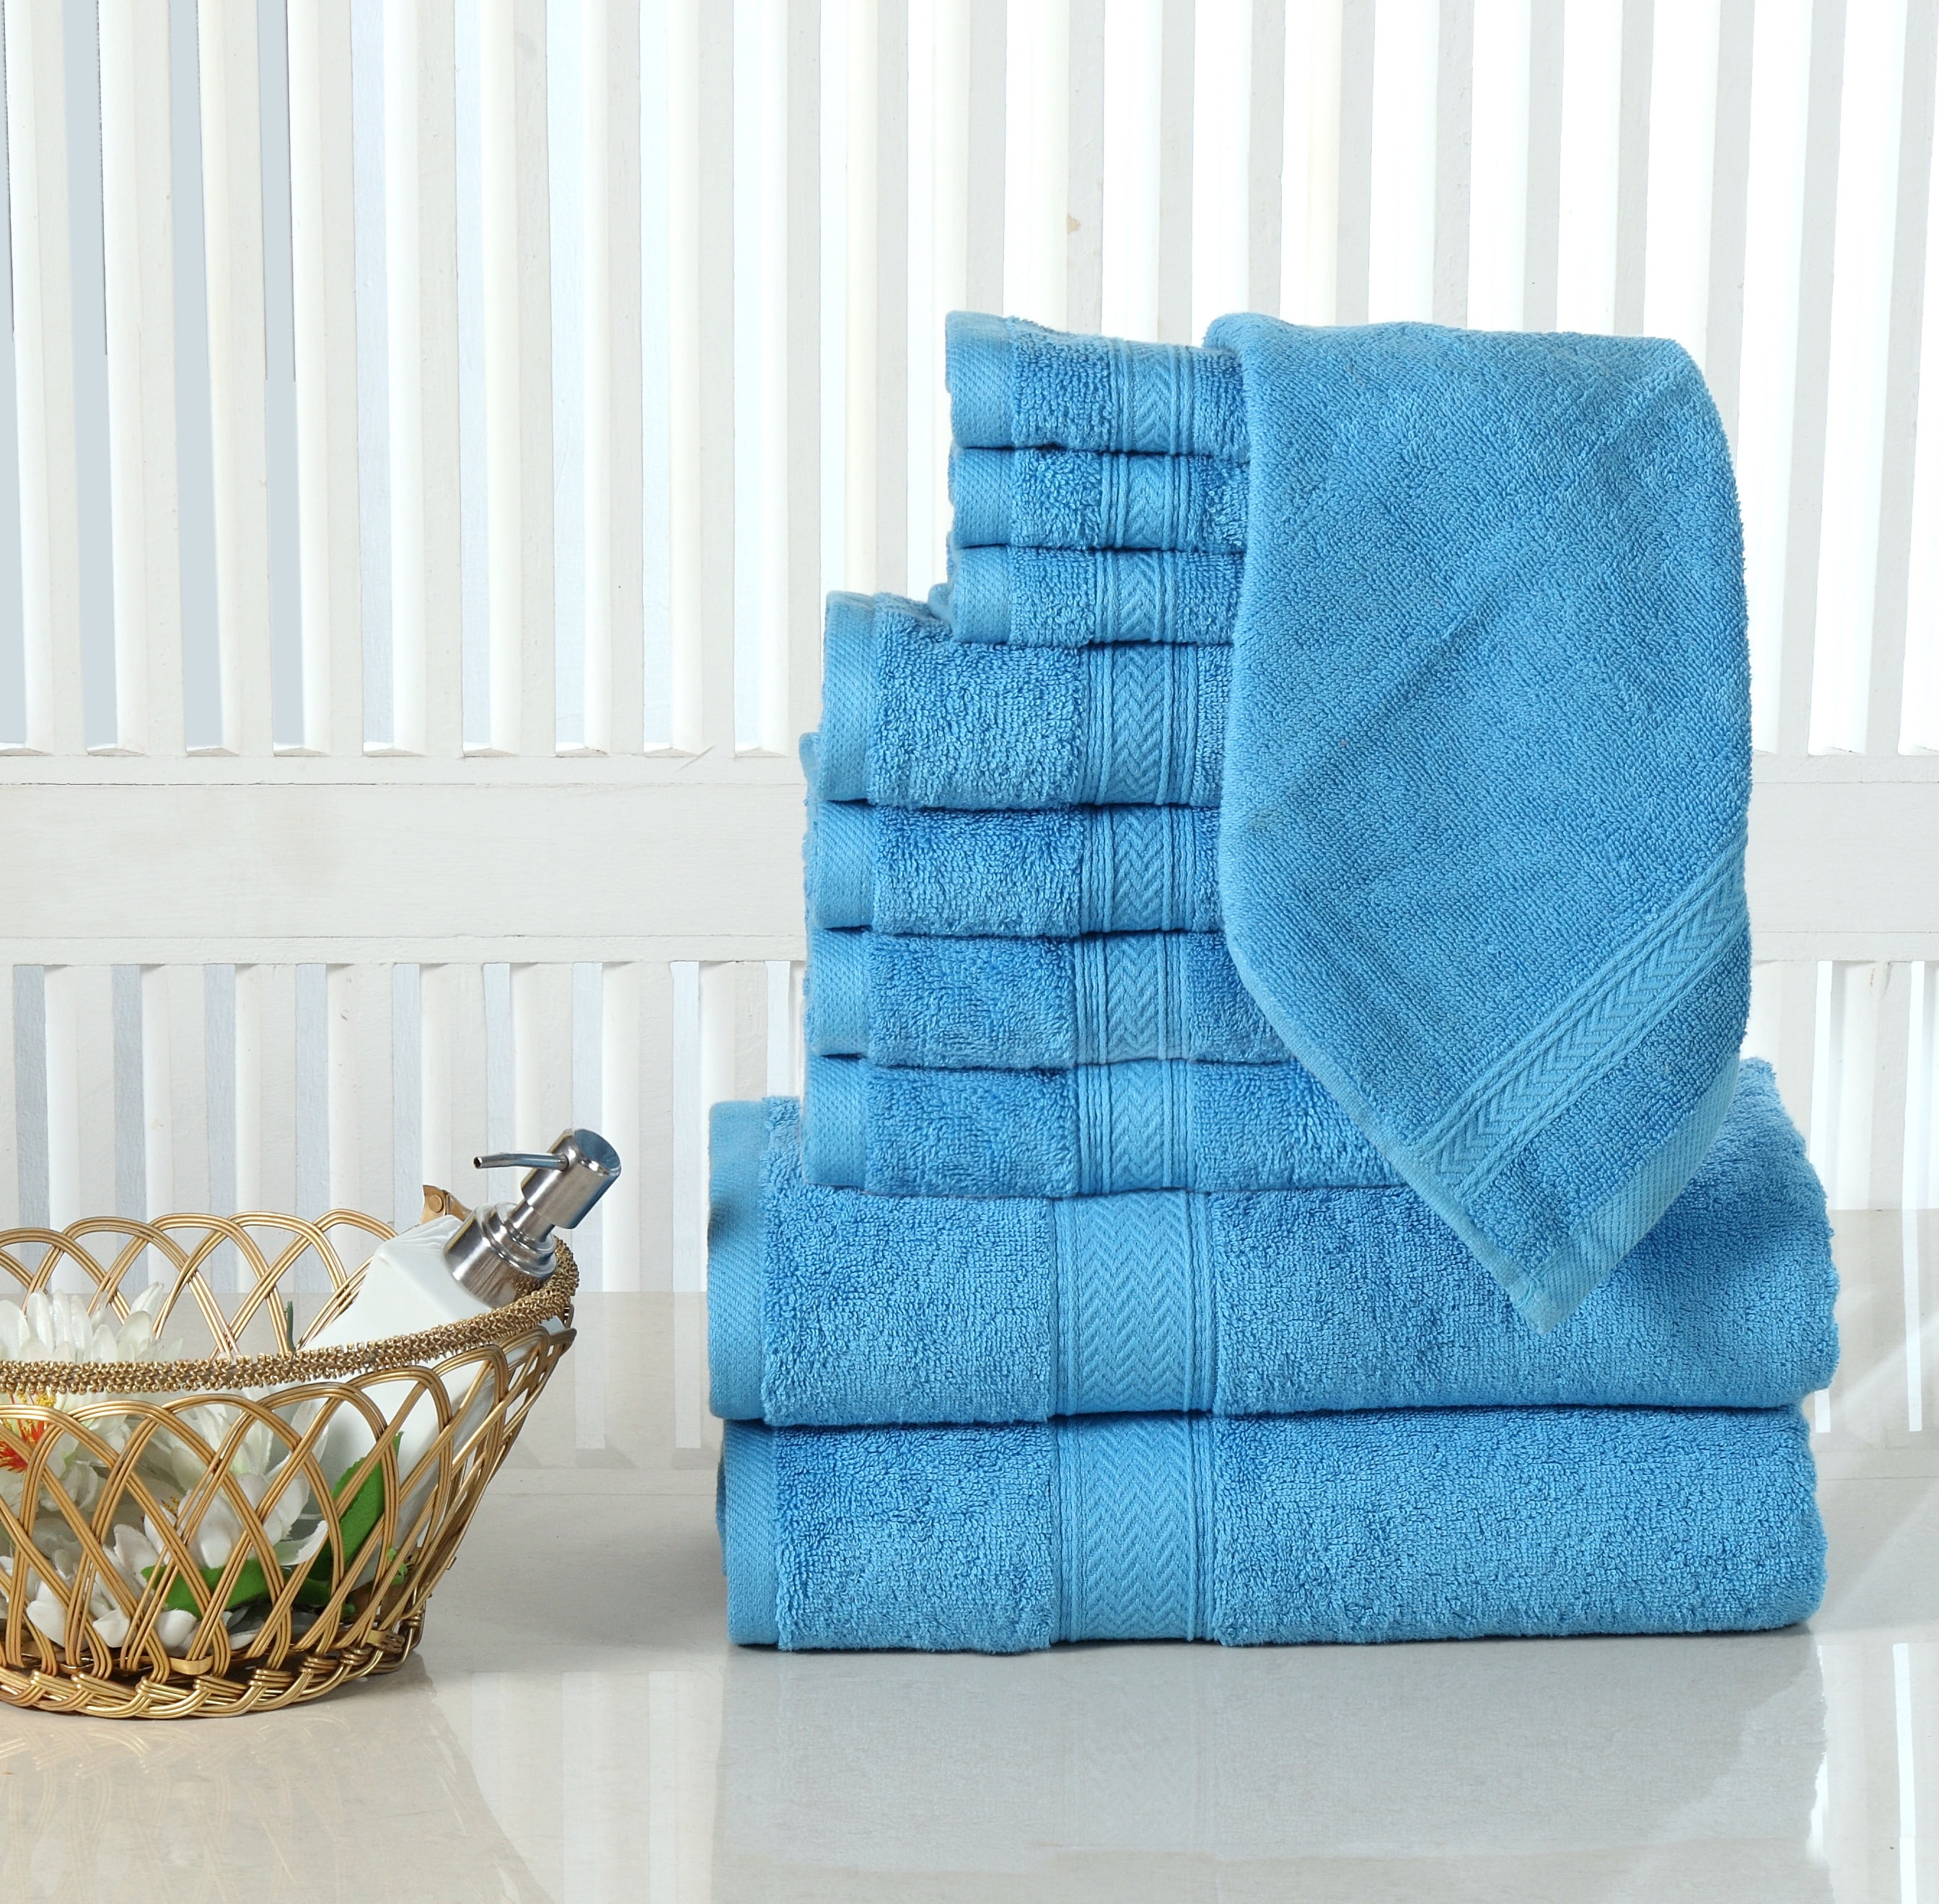 100% Cotton 24 piece Move-In Bundle Towel Set (2 Bath Sheets, 4 Bath Towels,  6 Hand Towels, 8 Wash Cloths, 4 Fin (As Is Item) - Bed Bath & Beyond -  34299550